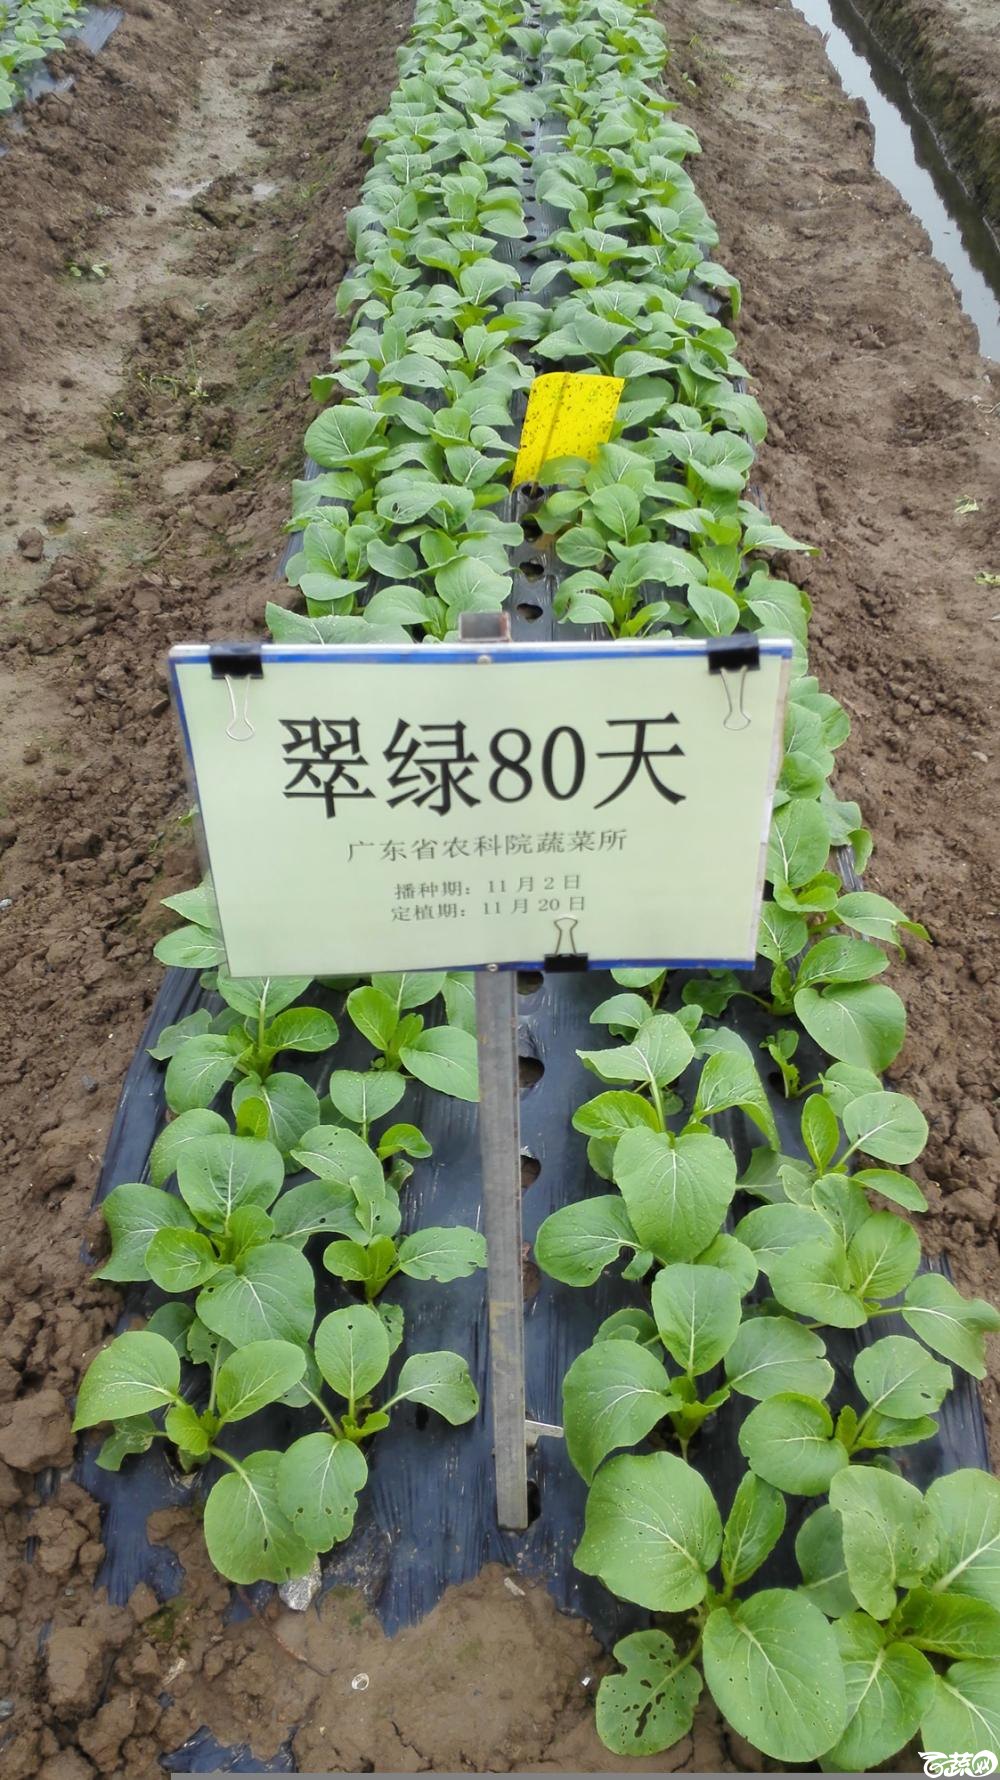 2014年12月8号中山蔬菜新品种展示会_叶菜_010.jpg